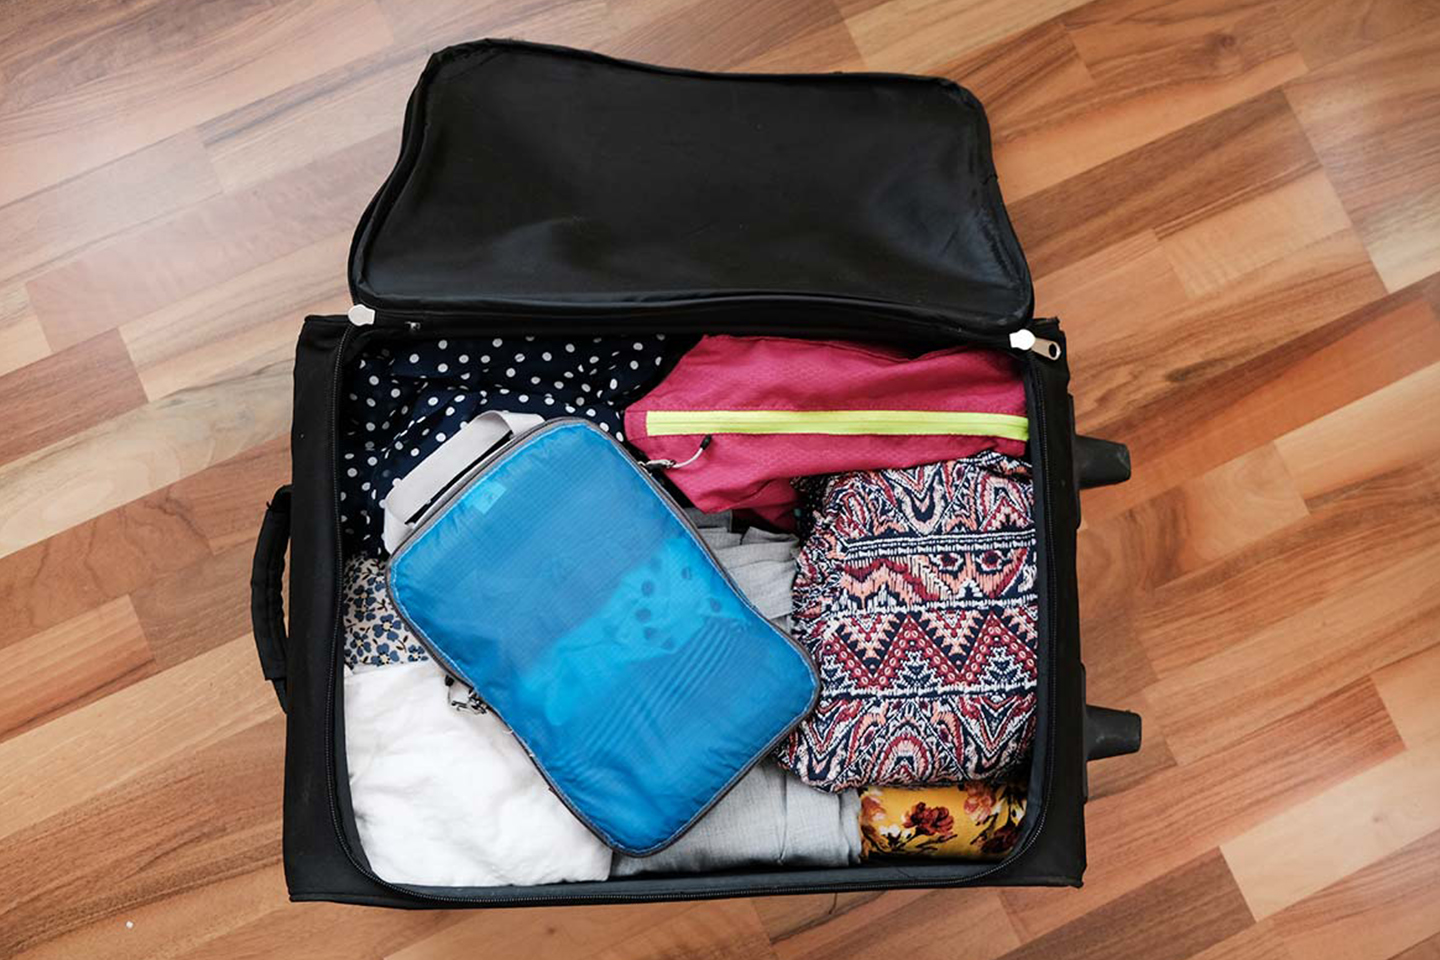 21 técninas para empacar y ahorrar espacio en tu maleta